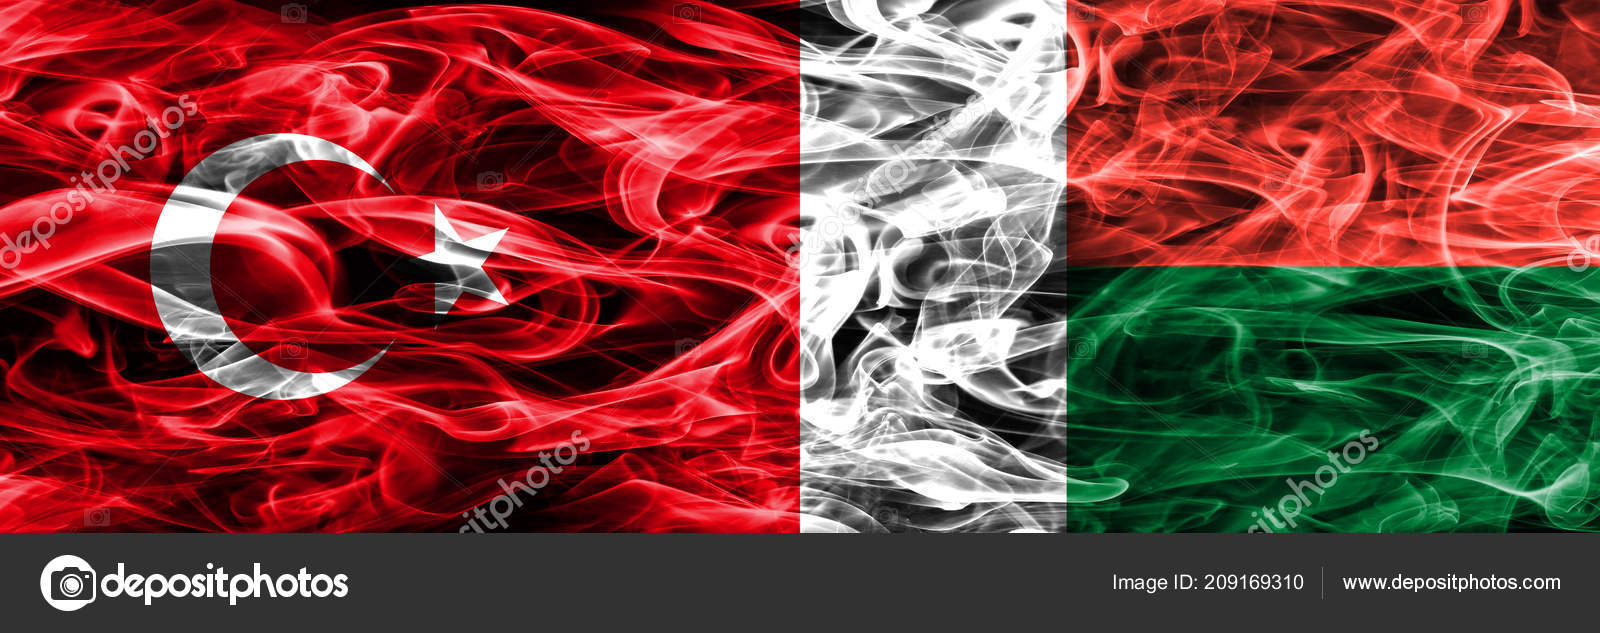 トルコ対マダガスカル煙サイド サイド配置フラグ 一緒にトルコとマダガスカルの国旗 ストック写真 C Vladem